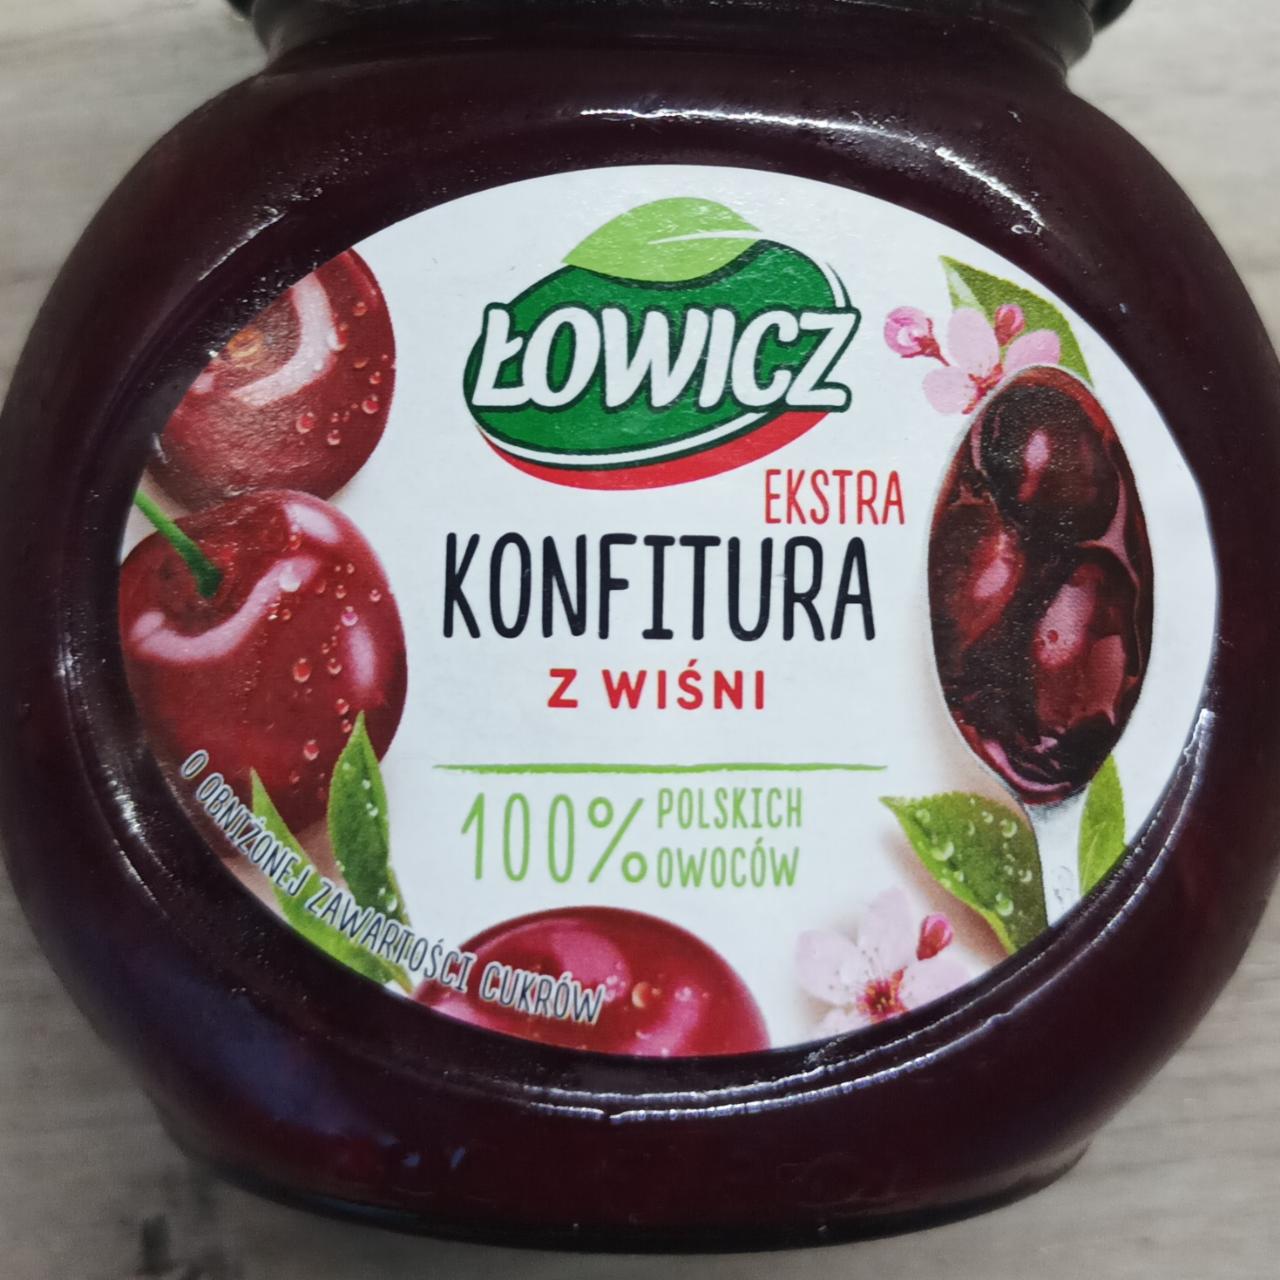 Фото - Варення вишневе з низьким вмістом цукру Konfitura Łowicz